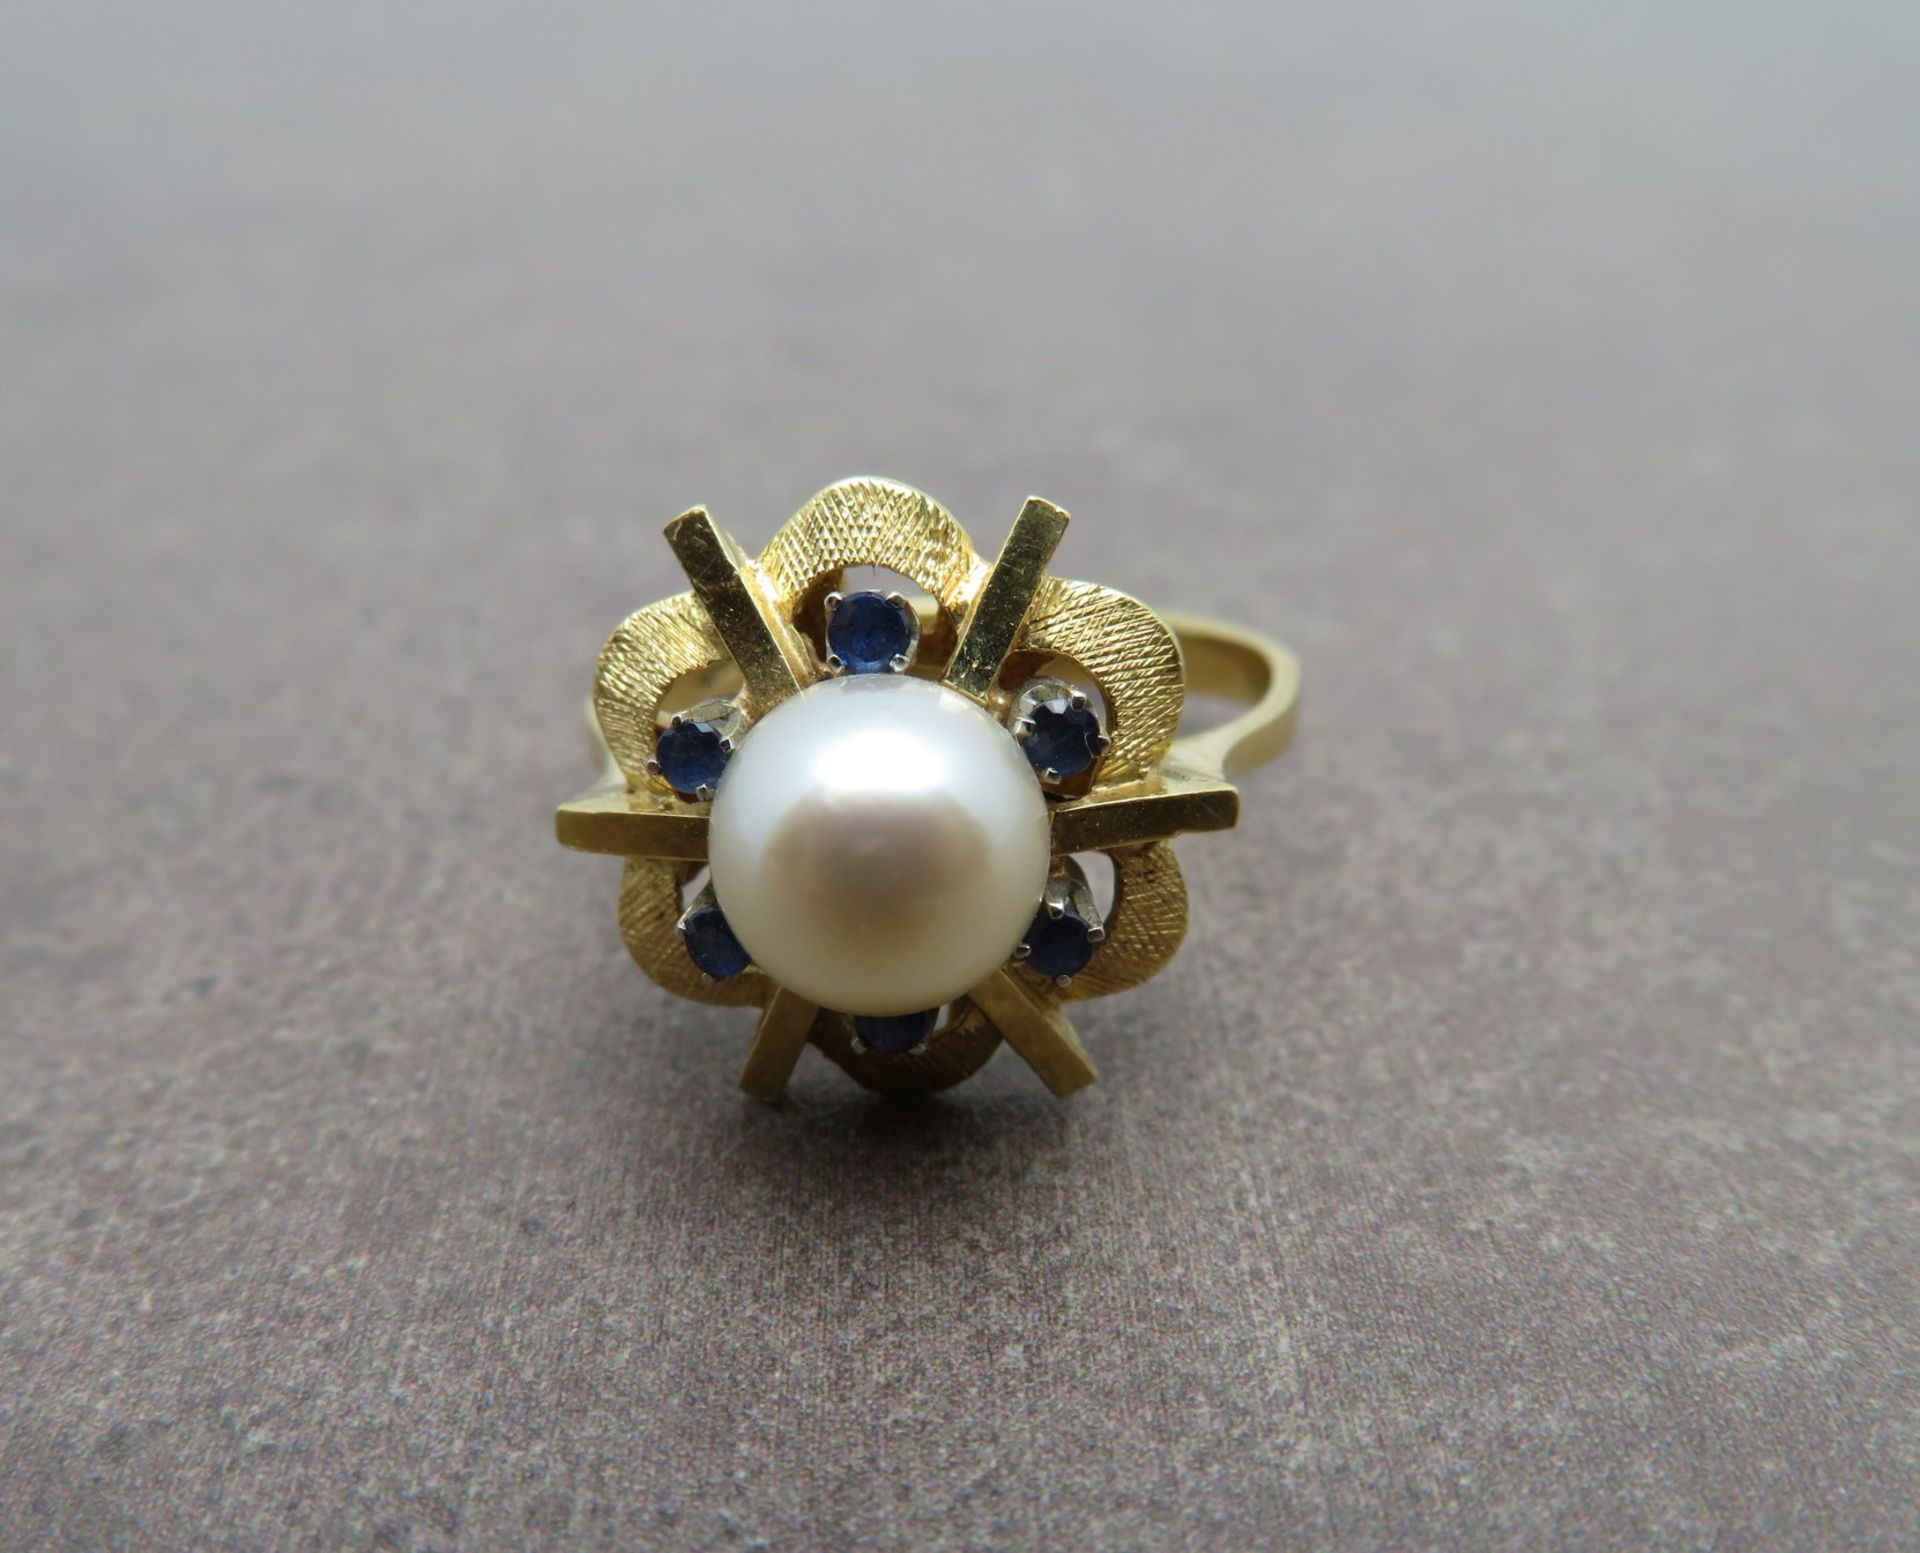 Entourage Ring, Blütenform, Perle, 6 facettierte Saphire, Gelbgold 750/000, gepunzt, 4,82 g, Ringko